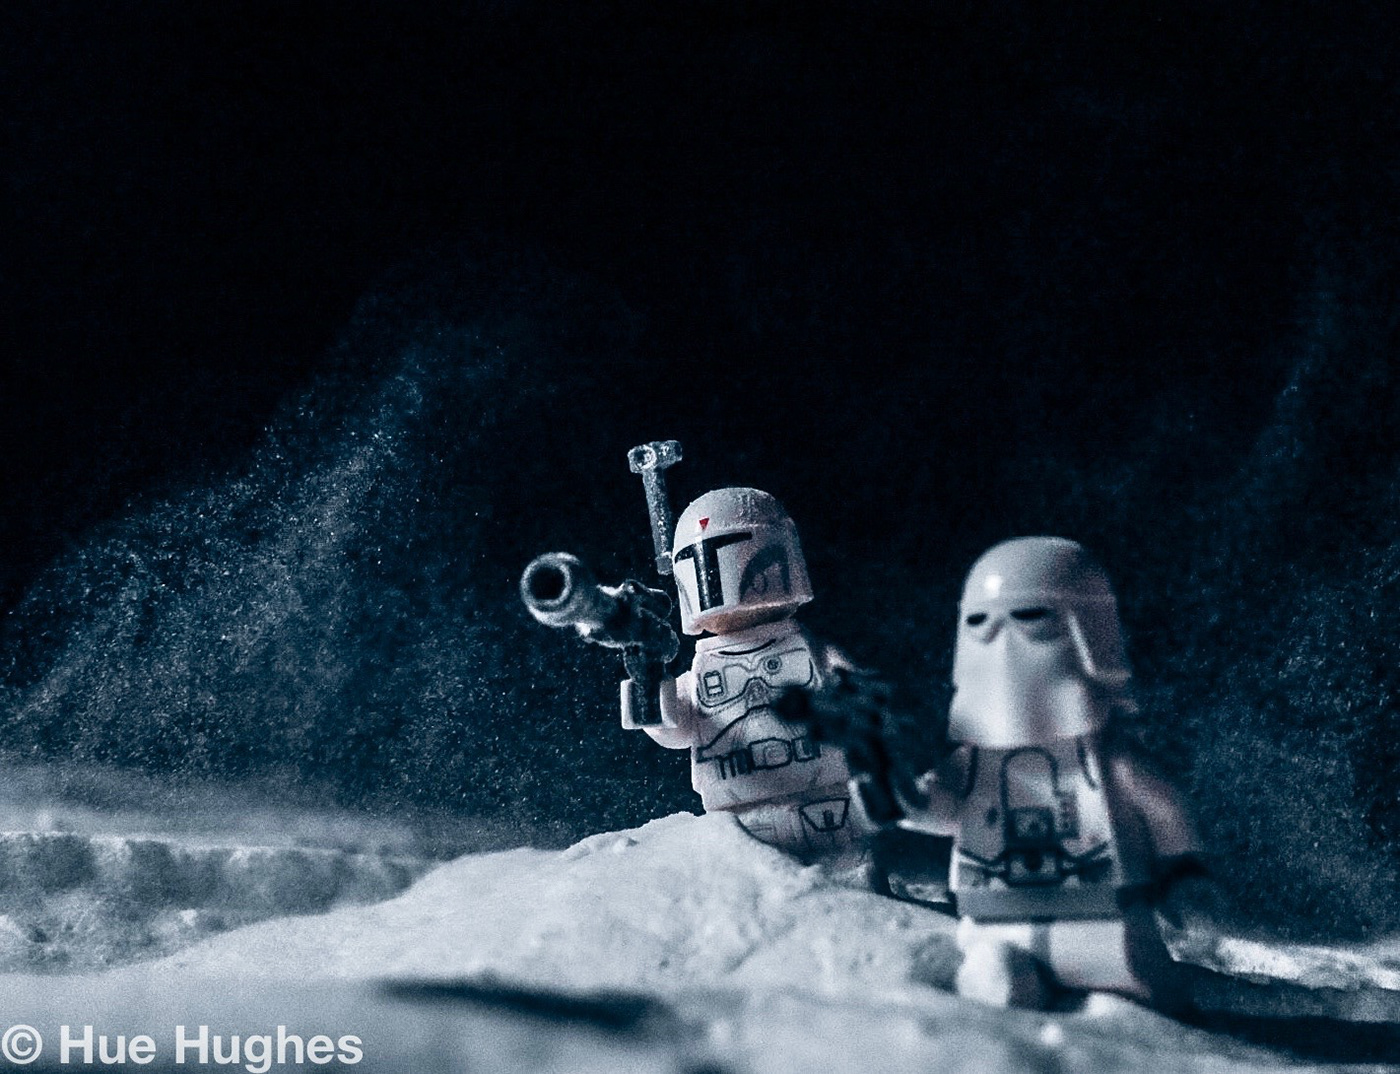 LEGO Legos kids toys toy star wars jedi Hoth snow